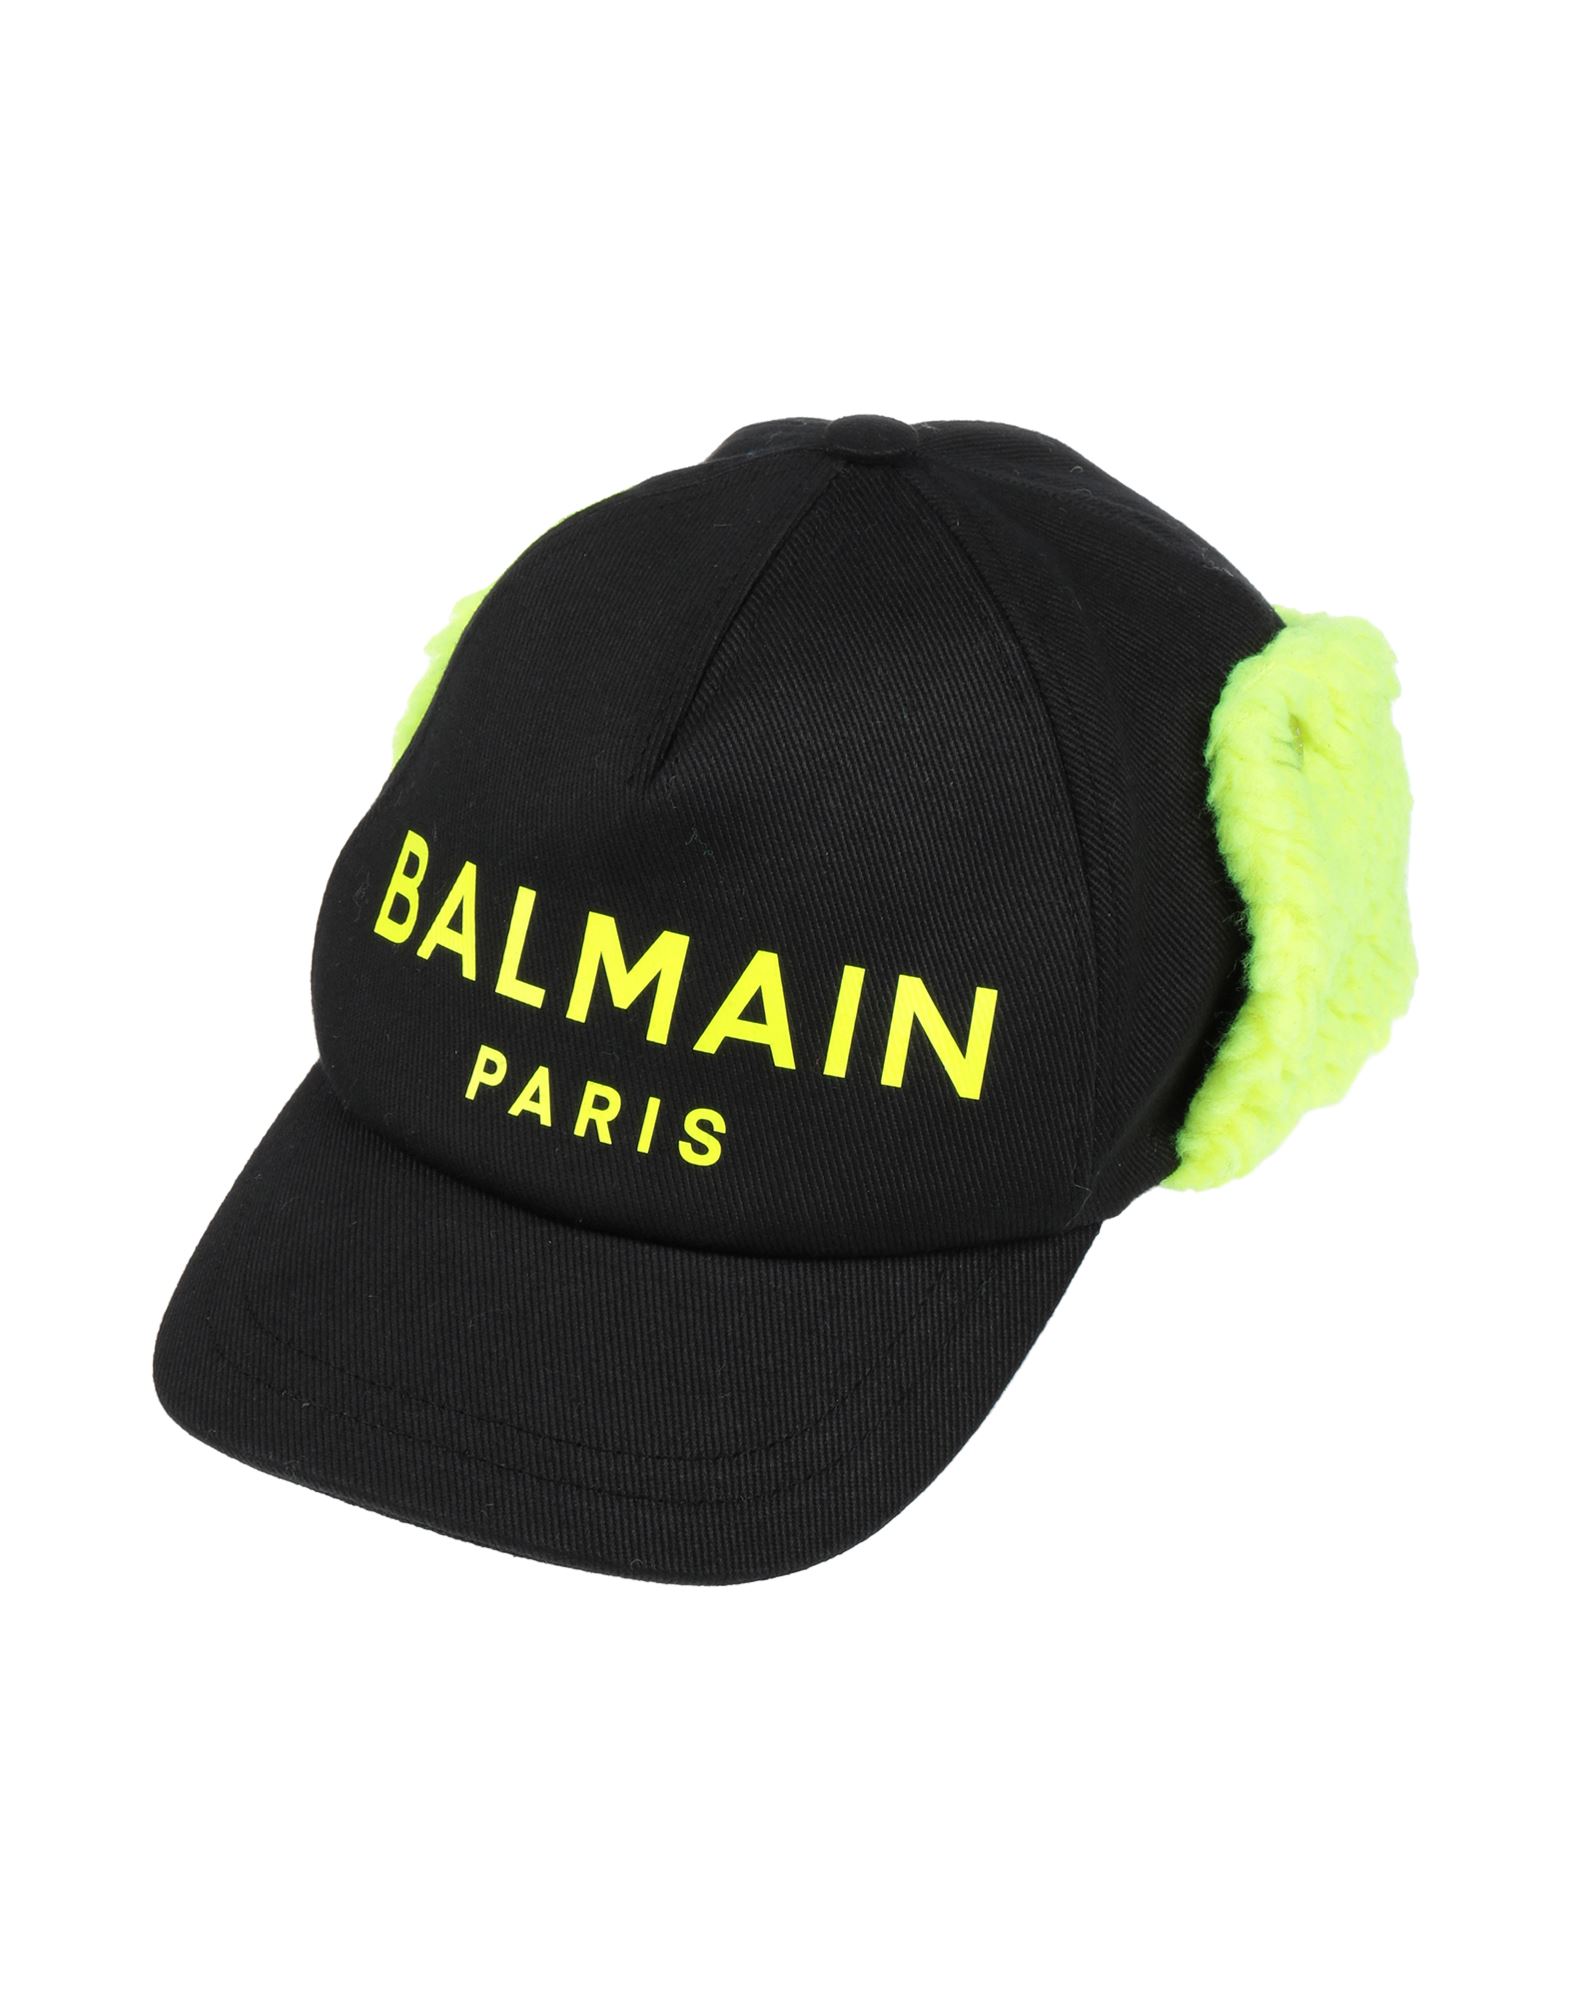 BALMAIN バルマン ボーイズ 帽子 ブラック